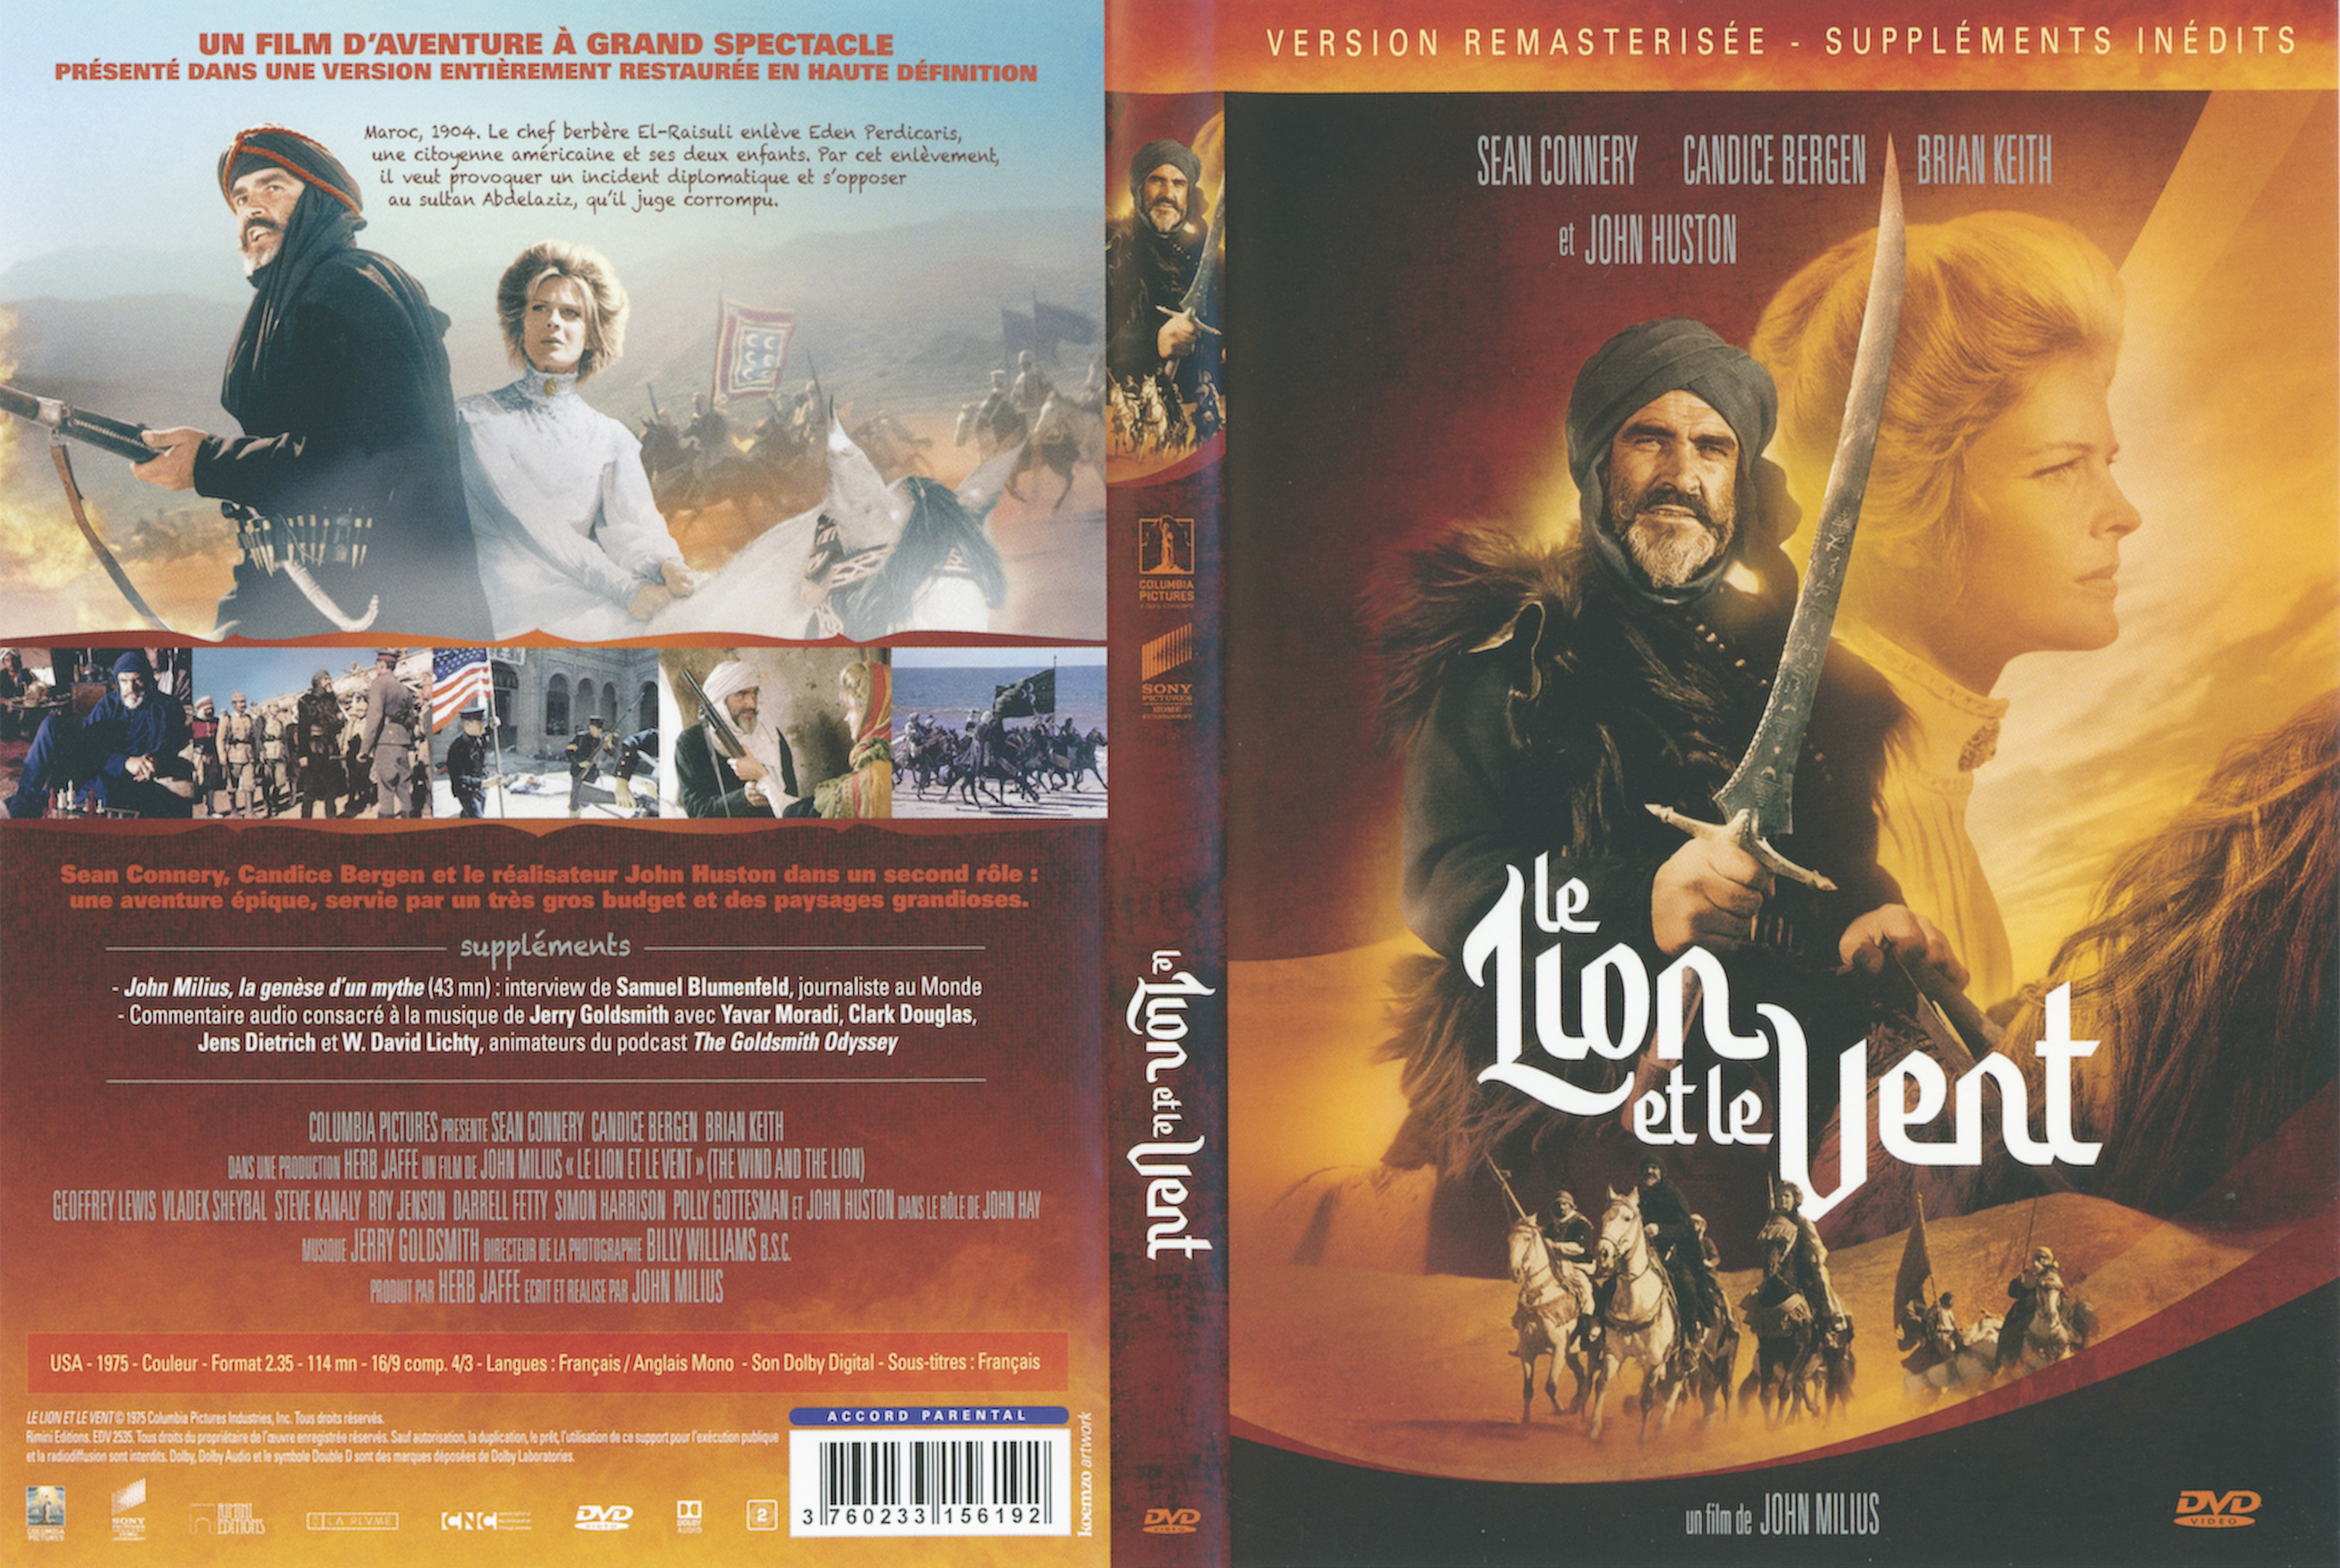 Jaquette DVD Le lion et le vent v2